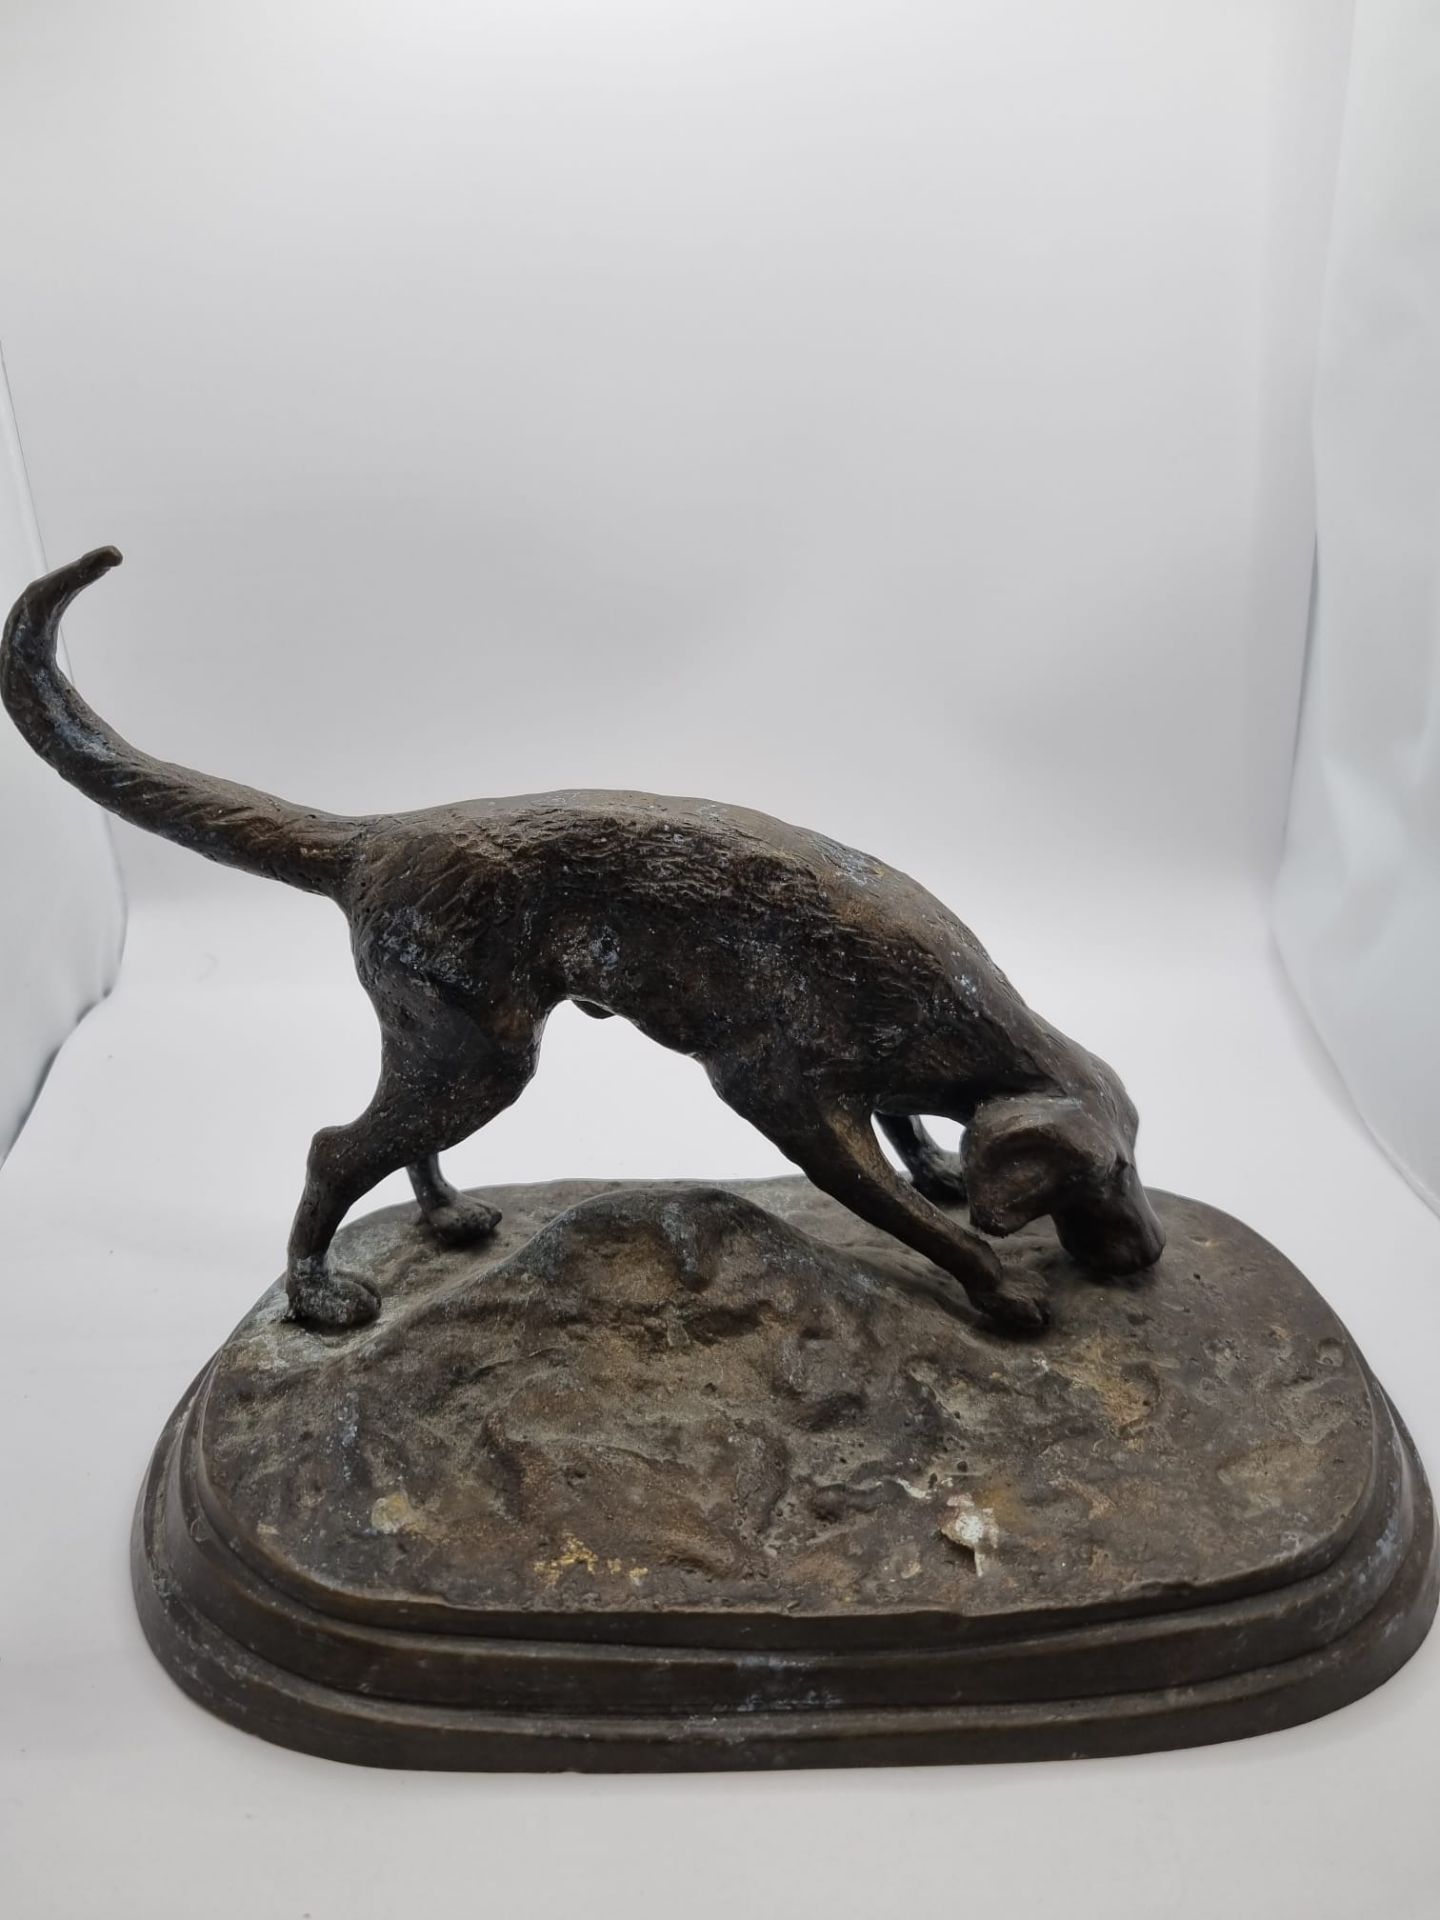 Cold cast bronze of a Labrador dog 24 cm wide x 16cm height 18cm - Image 3 of 4